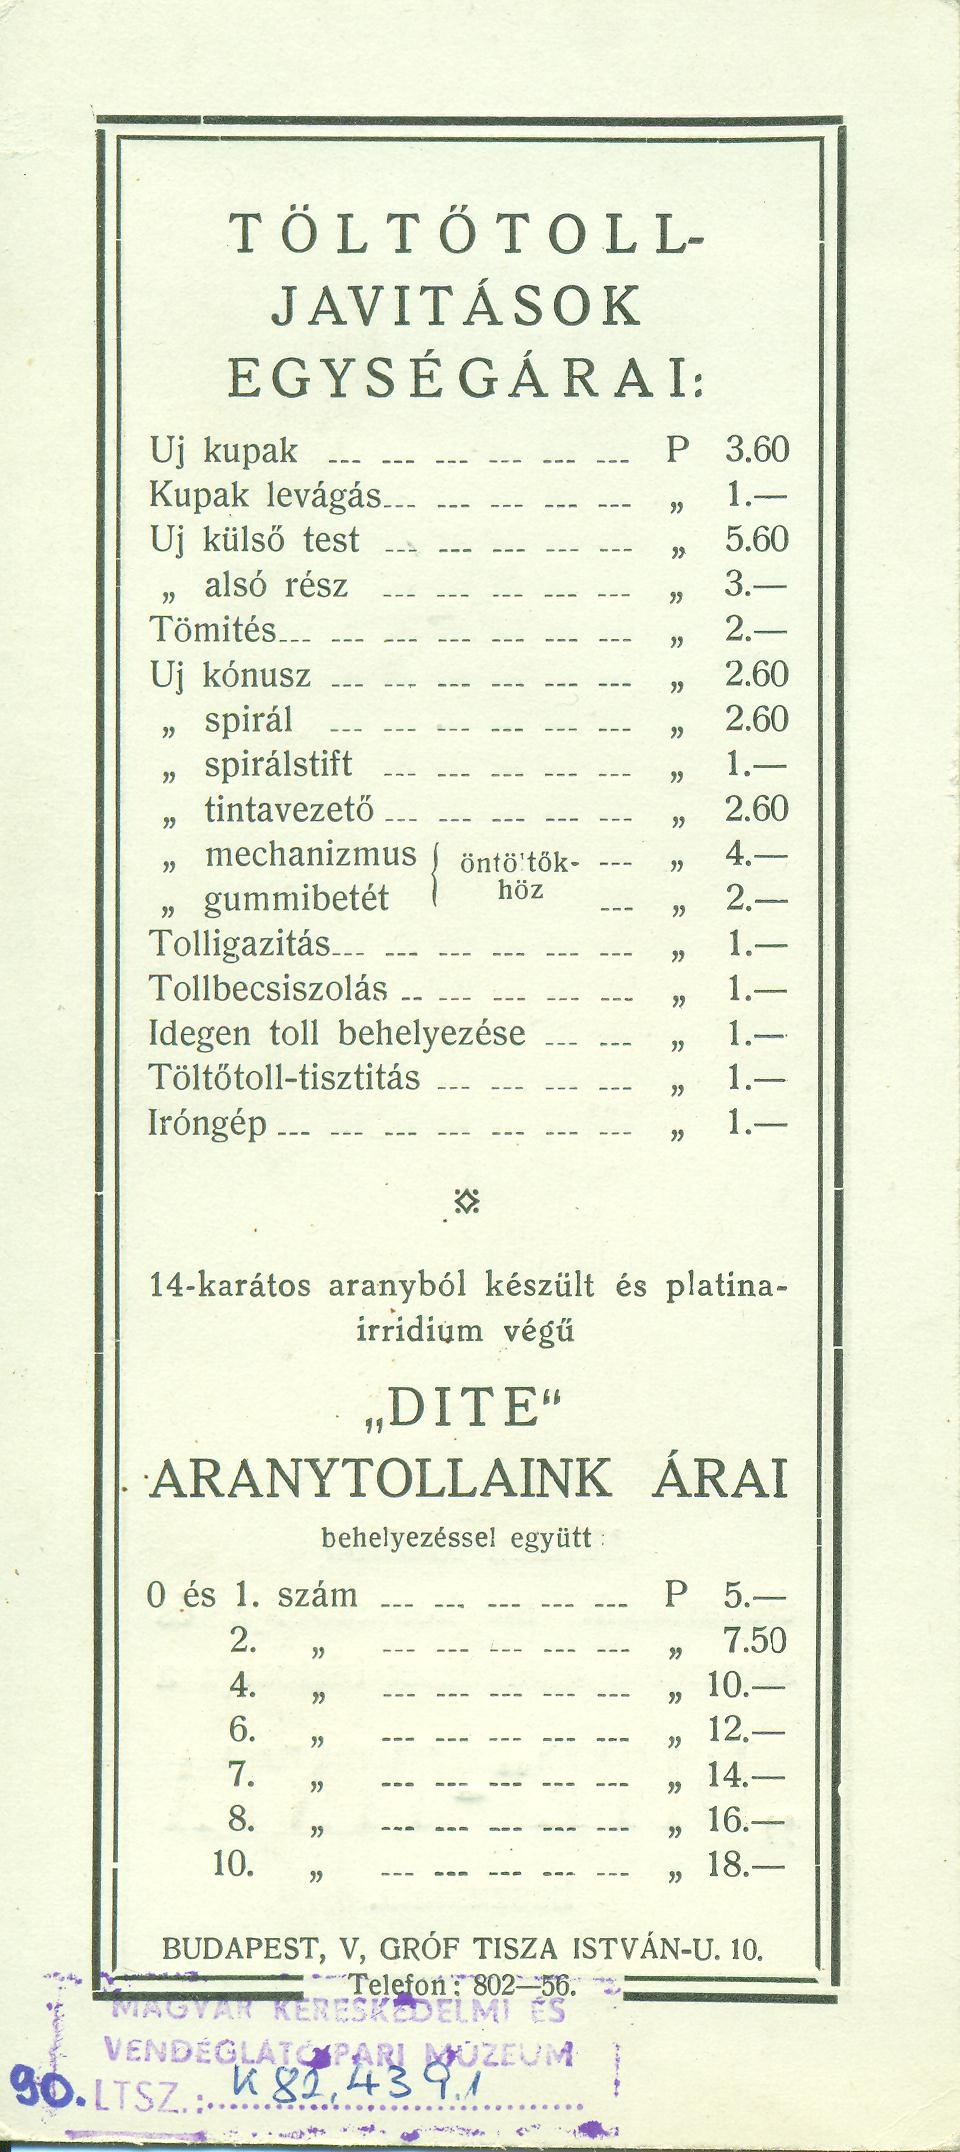 Töltőtolljavitások egységárai. "Dite" aranytollaink árai (Magyar Kereskedelmi és Vendéglátóipari Múzeum CC BY-NC-SA)